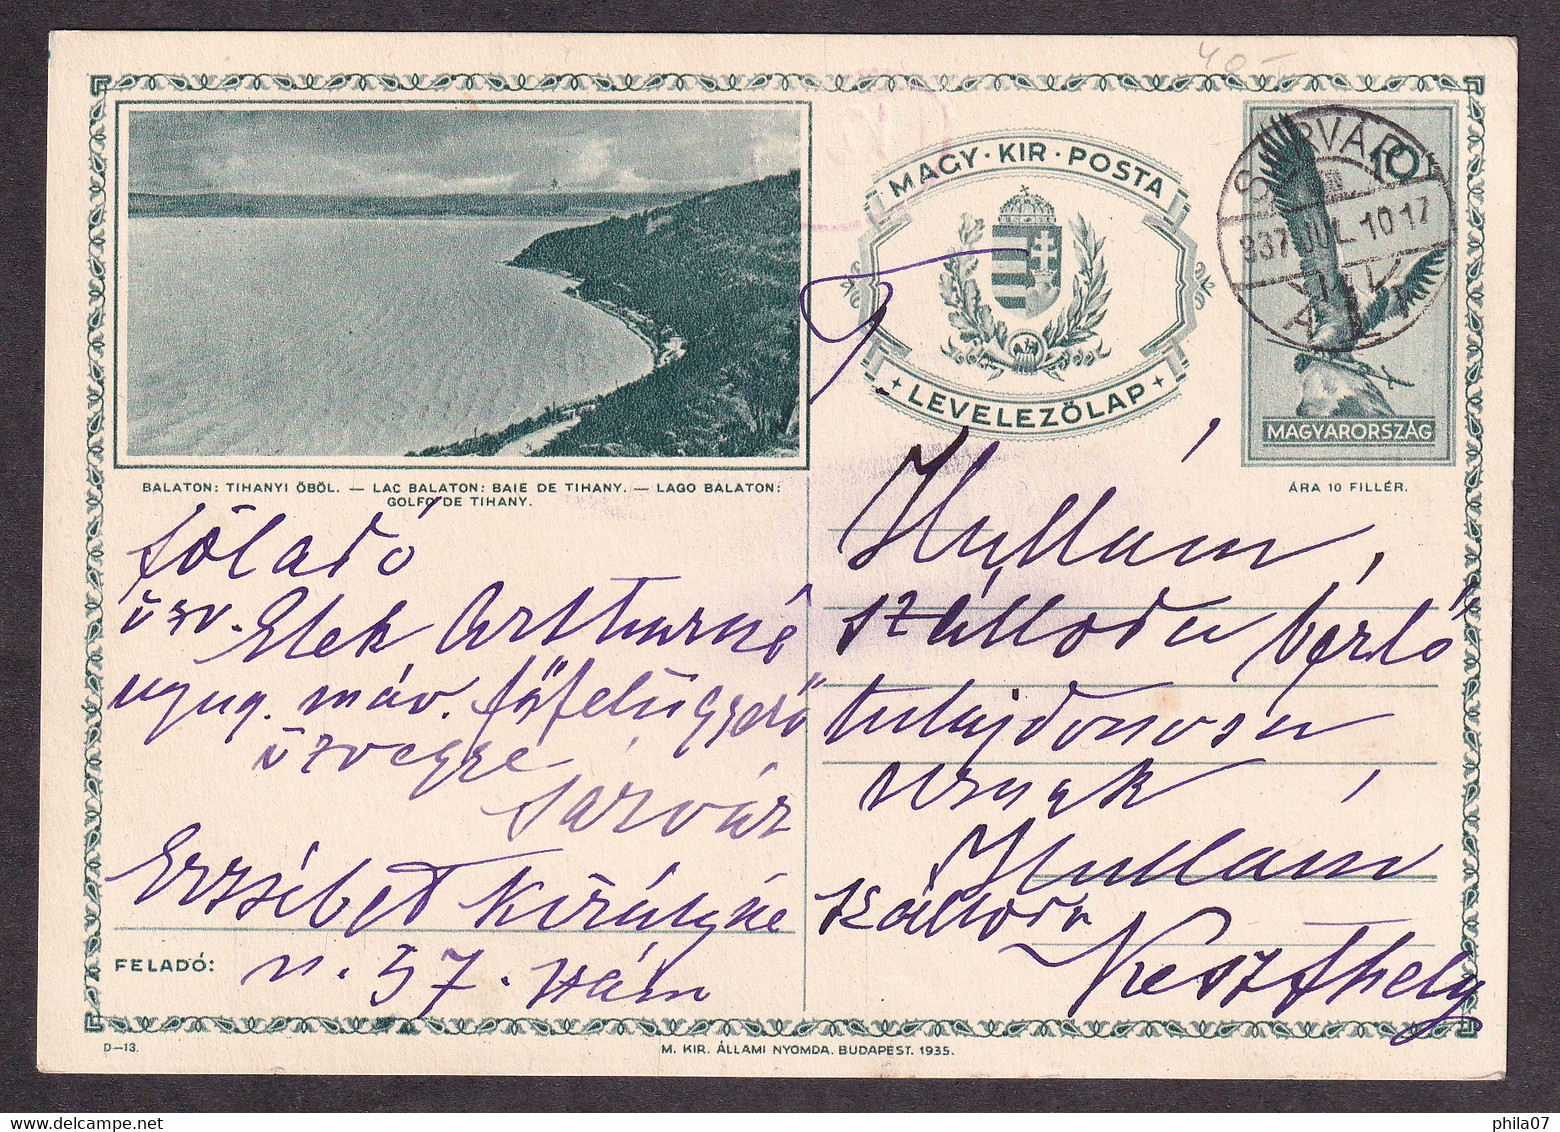 HUNGARY - Illustrated Stationery - Balaton: Tihanyi Obol - Lac Balaton Baie De Tihany - Circulated Stationery, 2 Scans - Postal Stationery